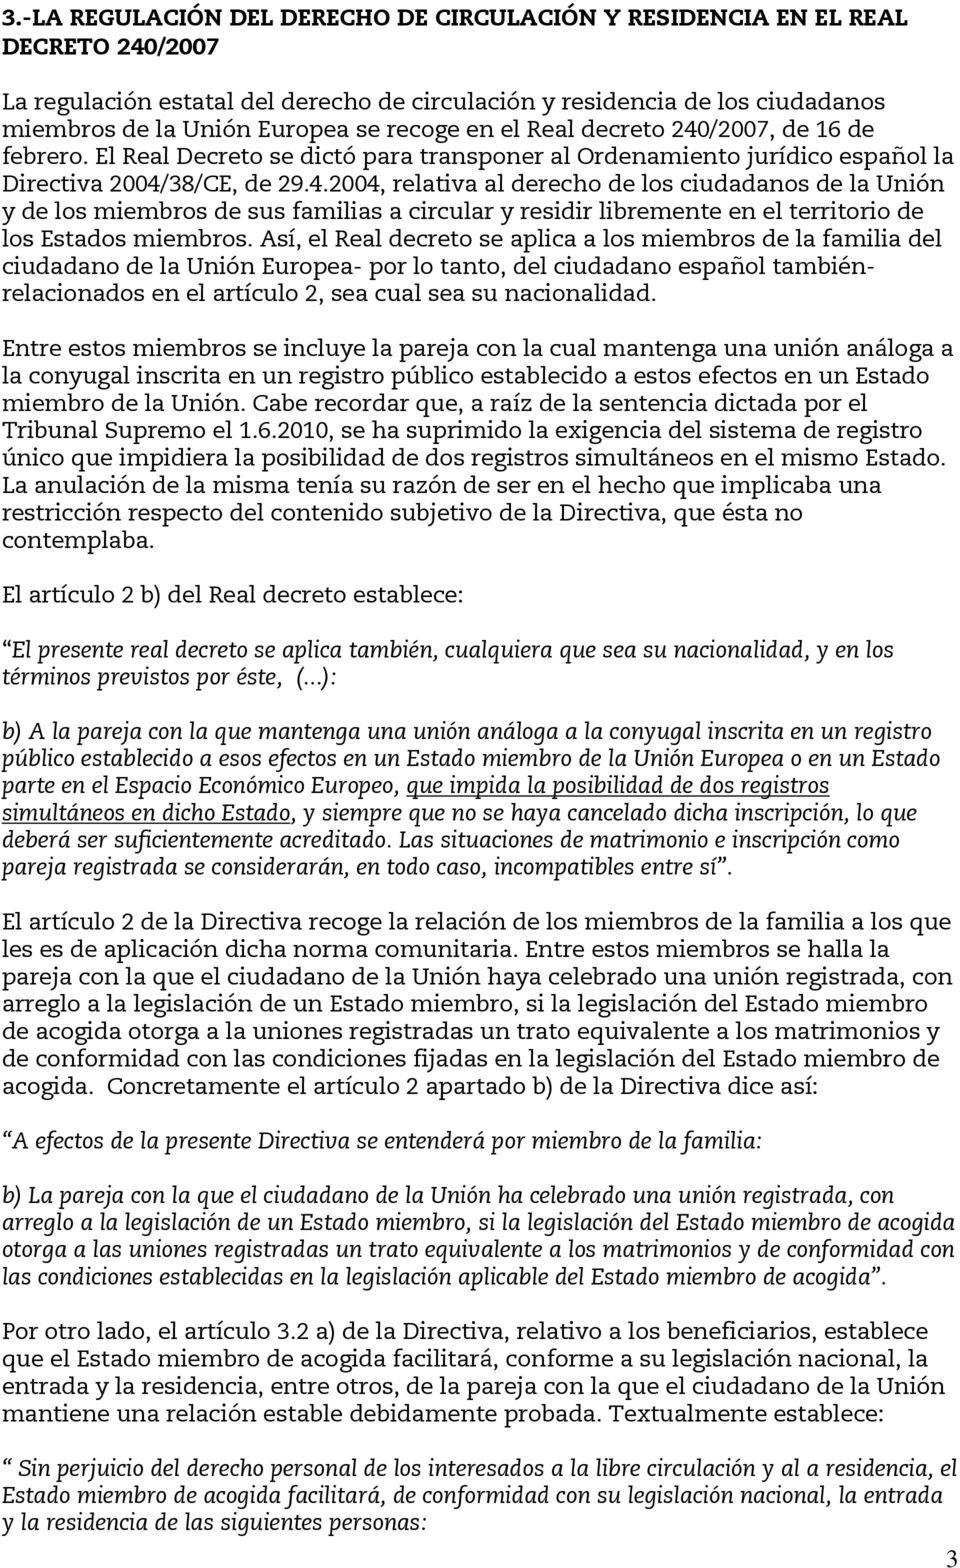 Así, el Real decreto se aplica a los miembros de la familia del ciudadano de la Unión Europea- por lo tanto, del ciudadano español tambiénrelacionados en el artículo 2, sea cual sea su nacionalidad.